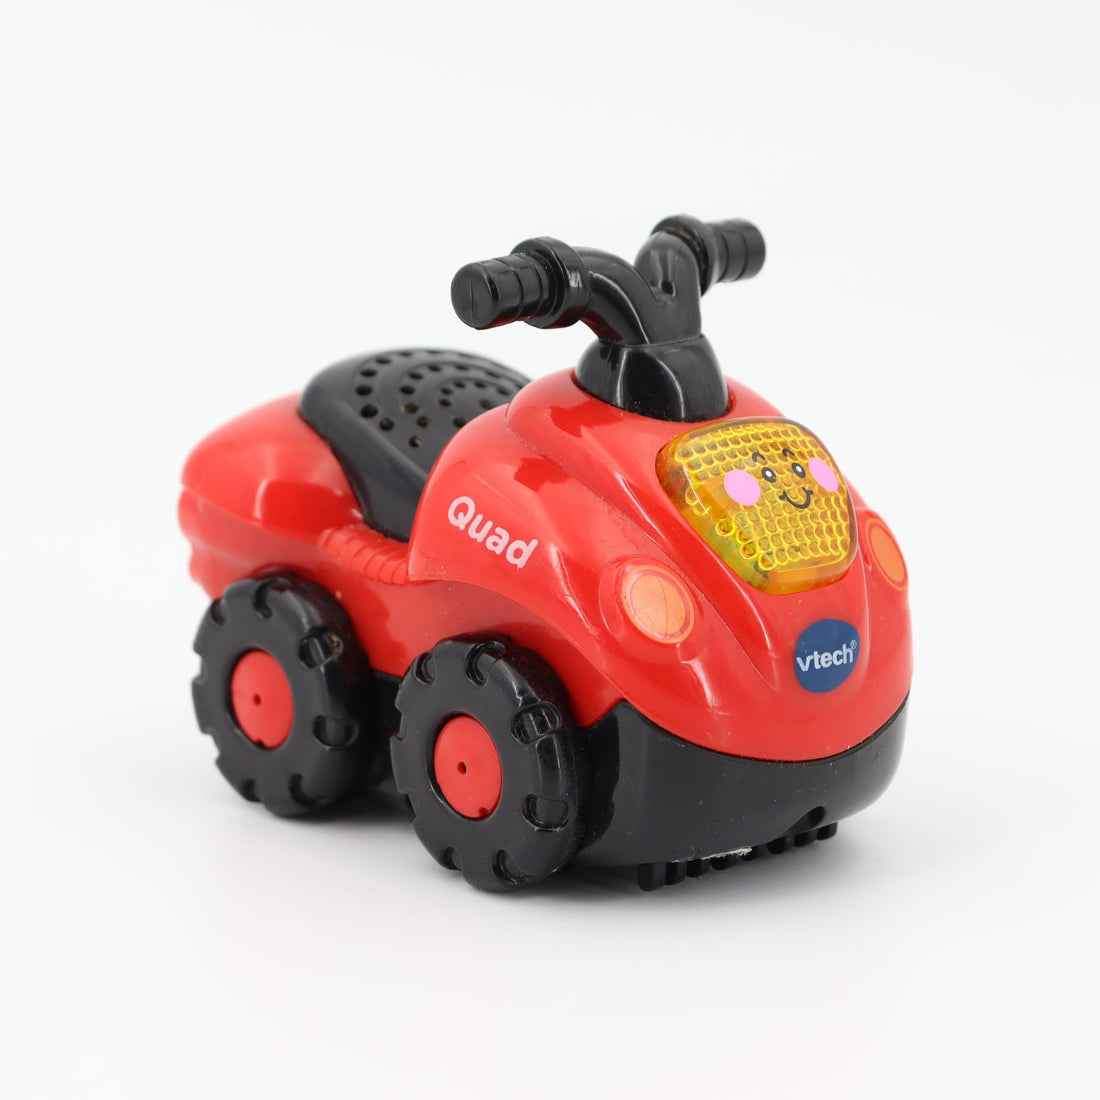 Kinderspiel - Vtech - Motorrad, Rot - guter Zustand